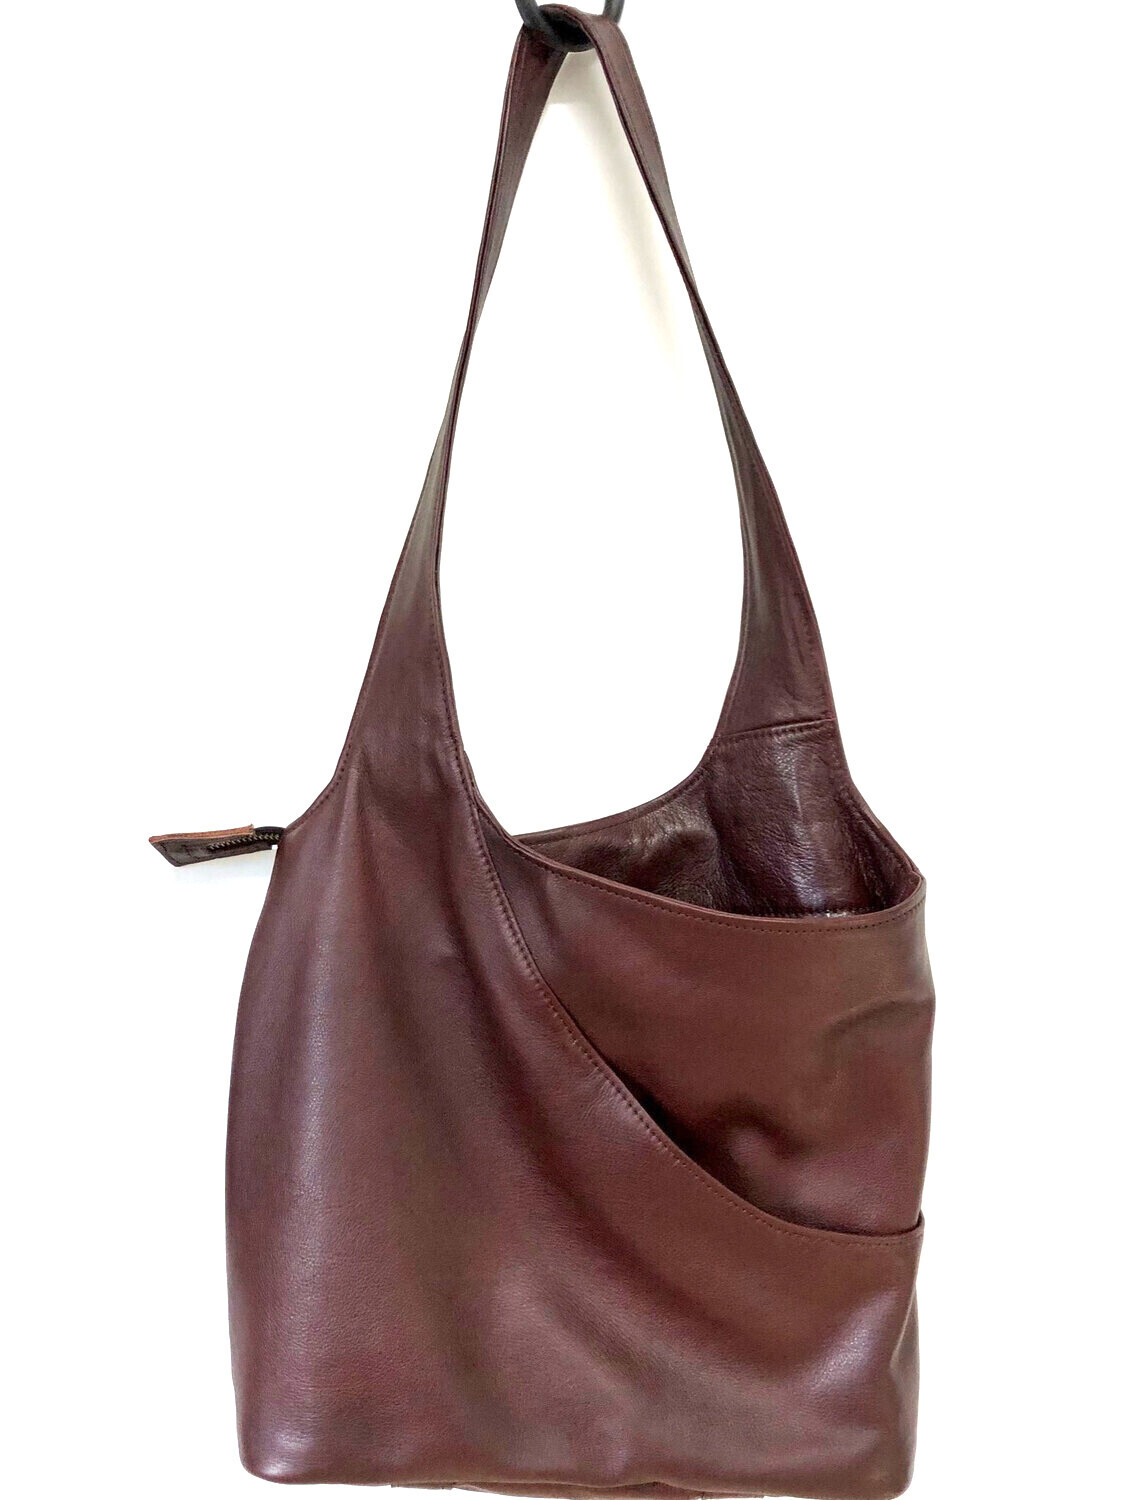 Hobo sac cuir français, cuir pleine fleur souple porté épaule couleur marron fermeture par zip fait à Toulouse 